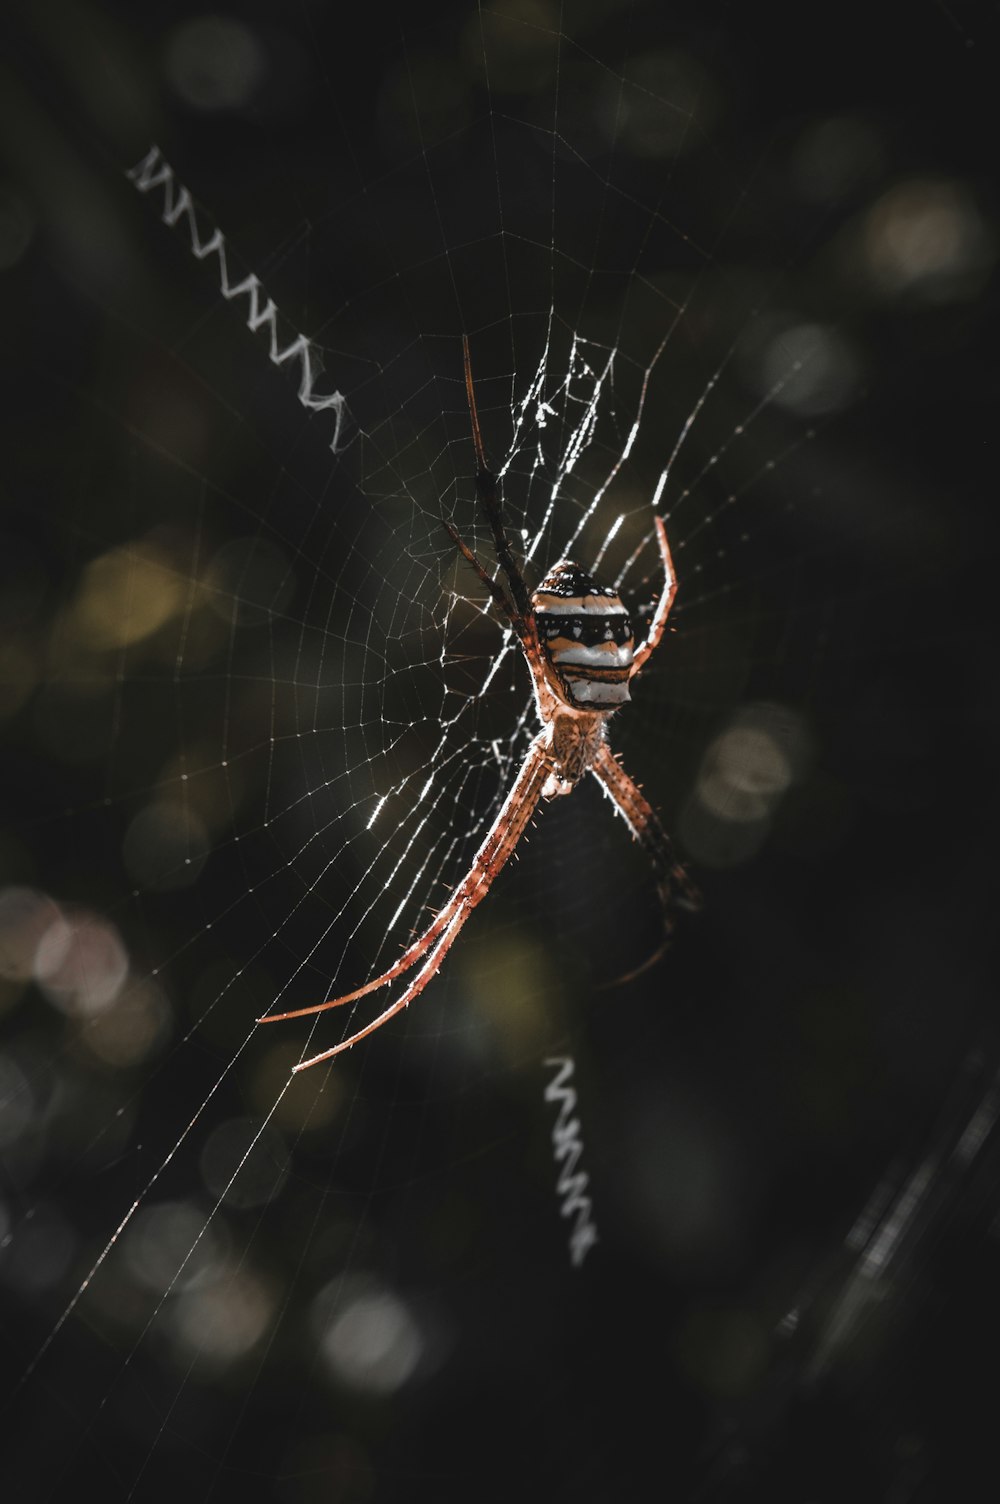 Braune Spinne auf Spinnennetz in Nahaufnahmen